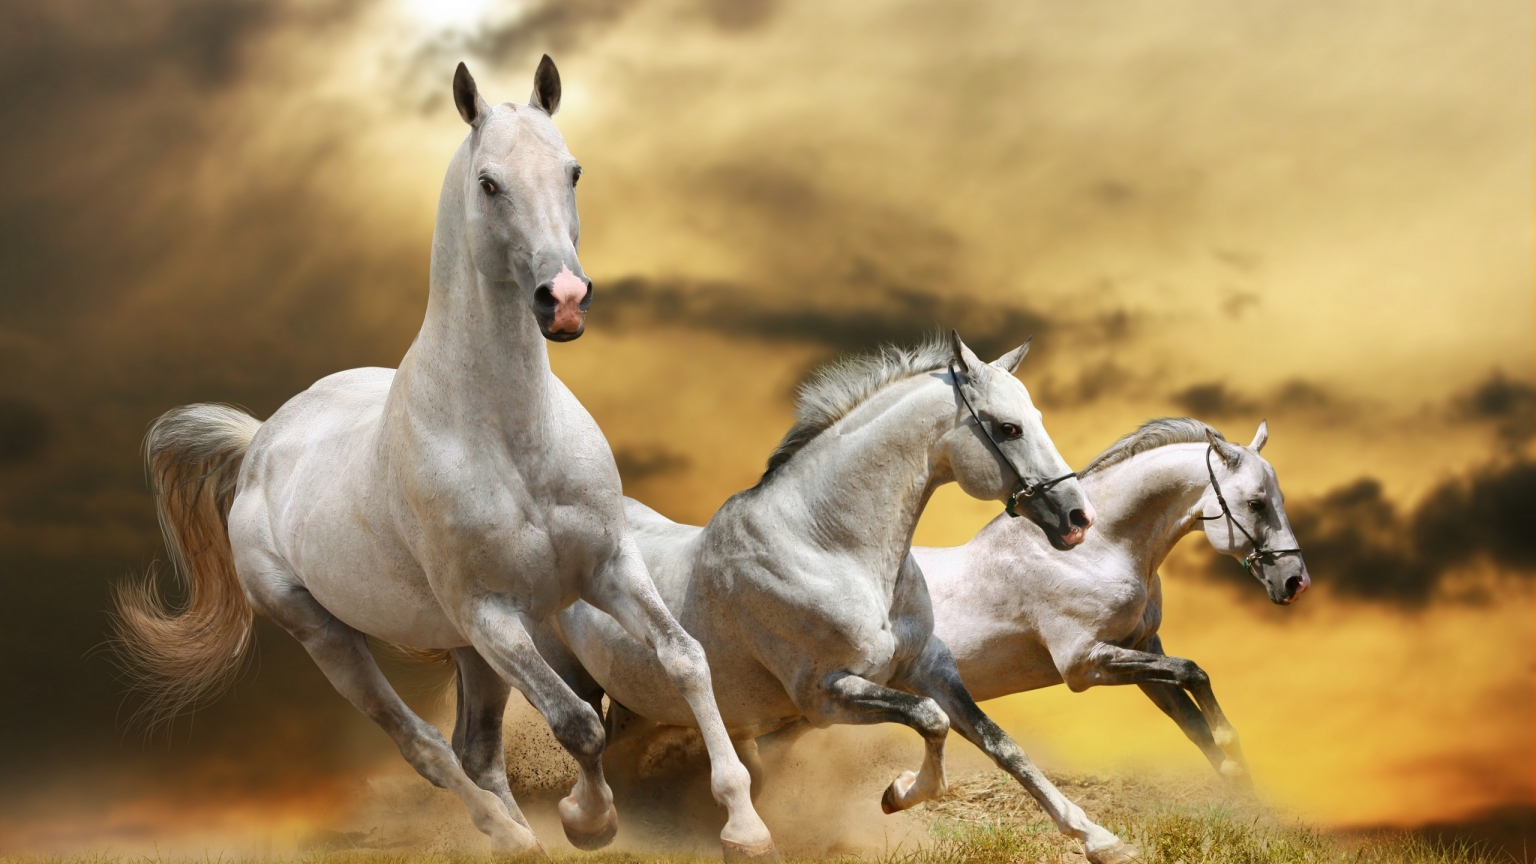 Wilde White Horses for 1536 x 864 HDTV resolution